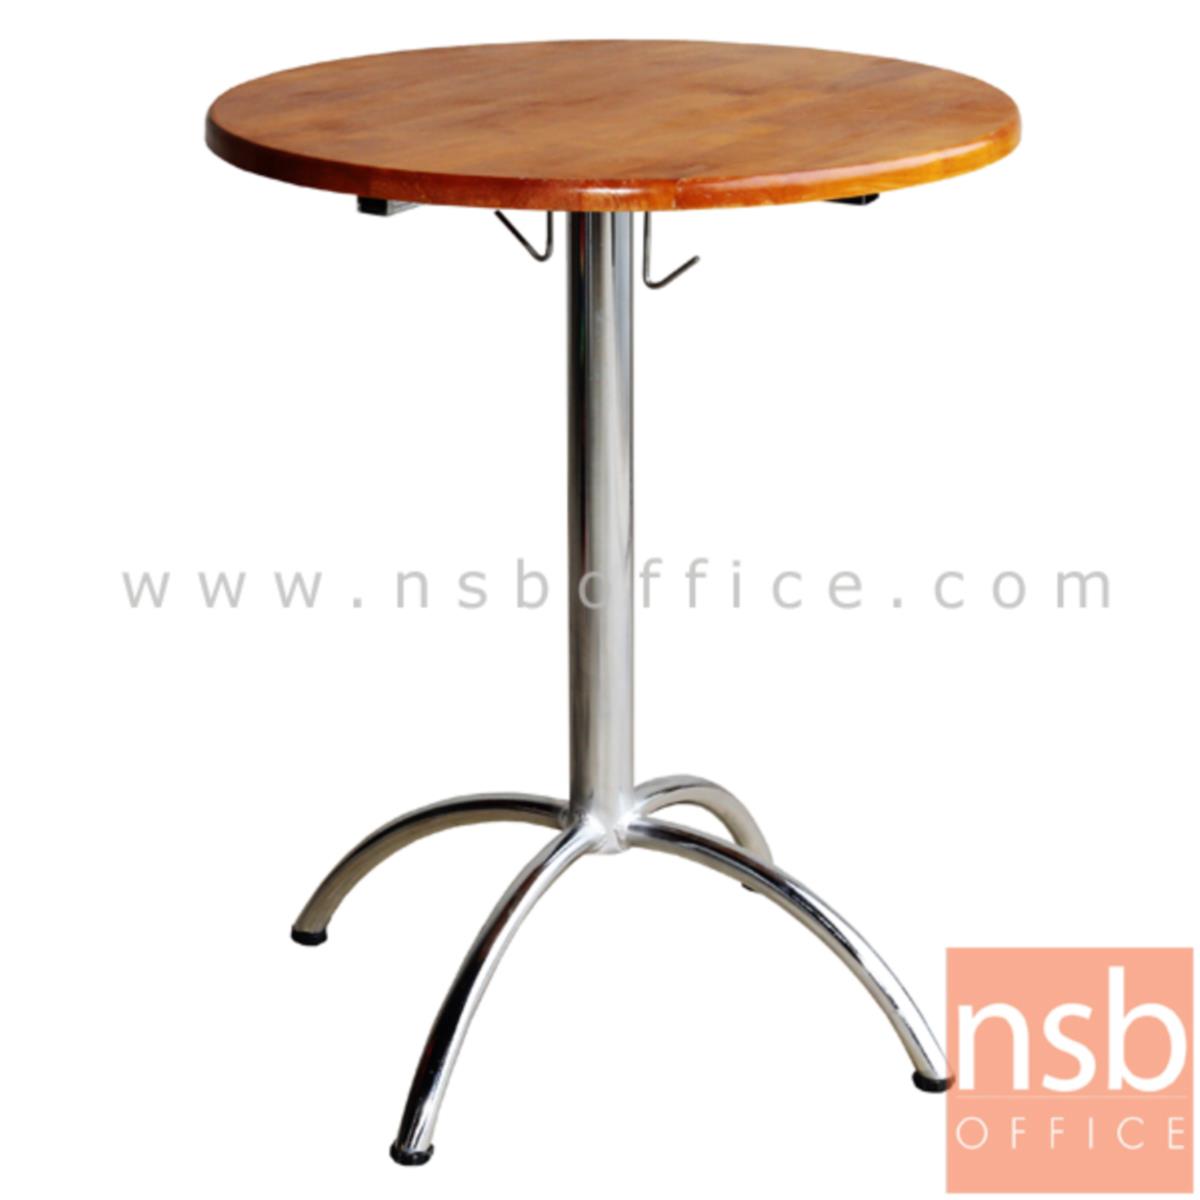 A14A003:โต๊ะไม้ยางพารา รุ่น Harran (ฮาร์รัน) ขนาด 60Di ,75Di cm. ขาเหล็ก  